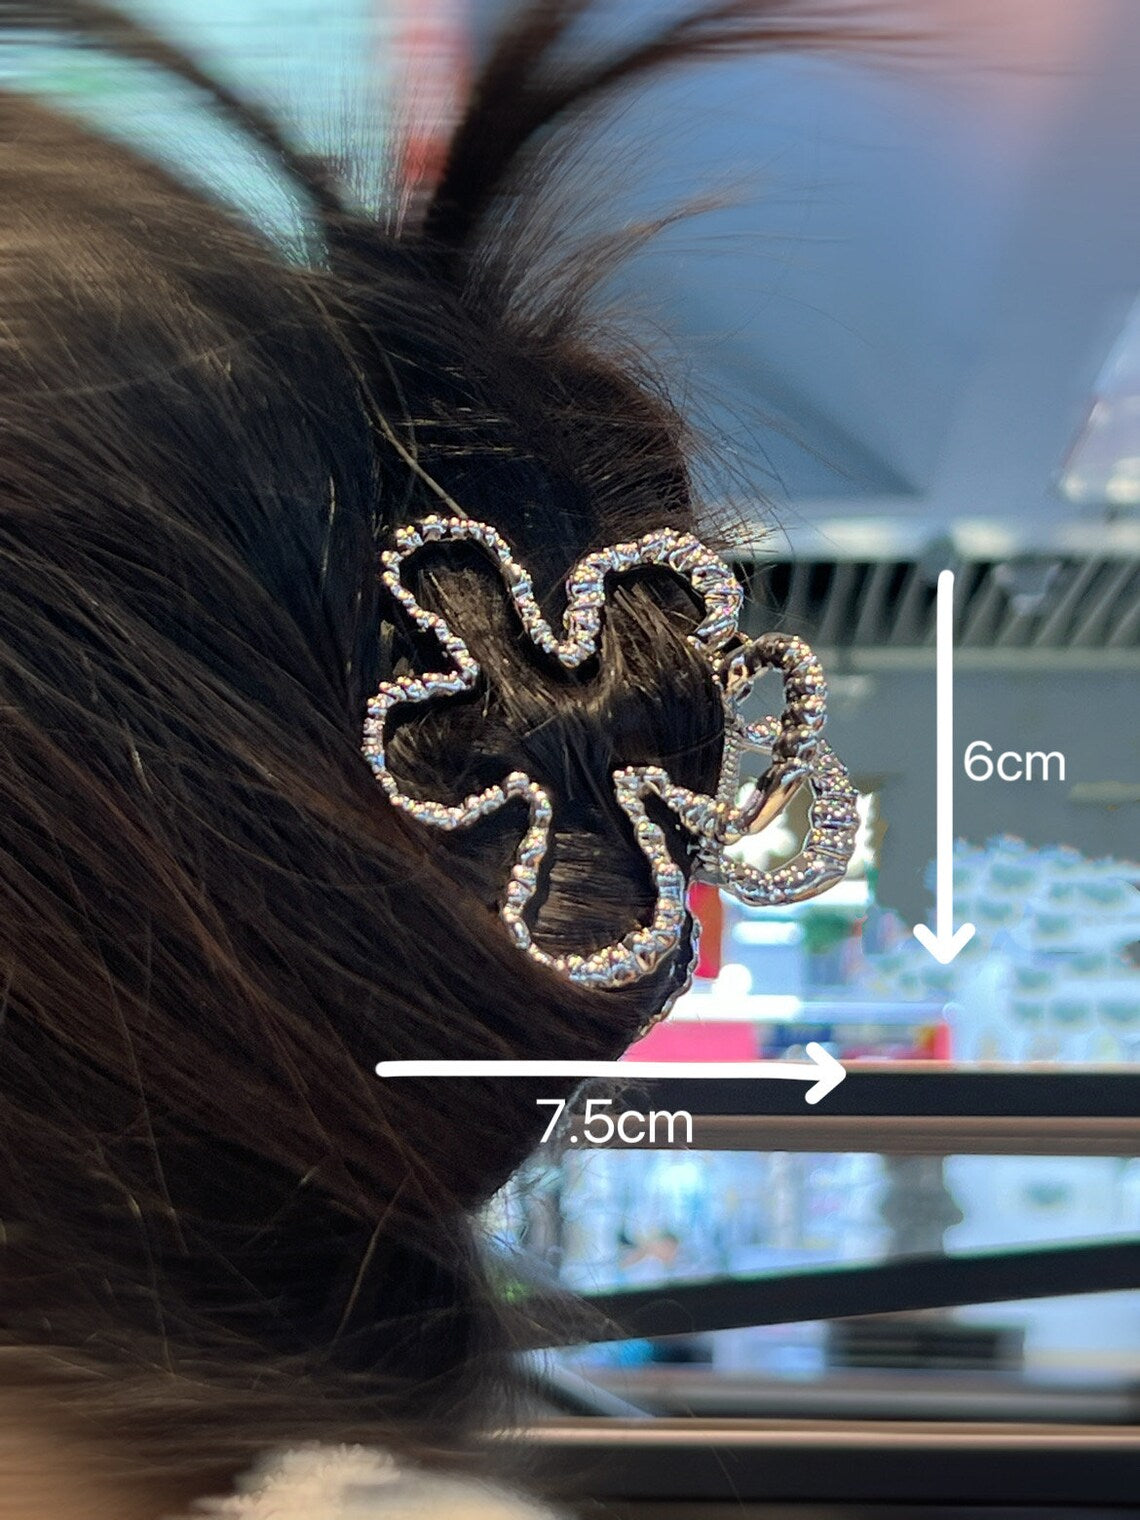 Clover Flower Hairclips